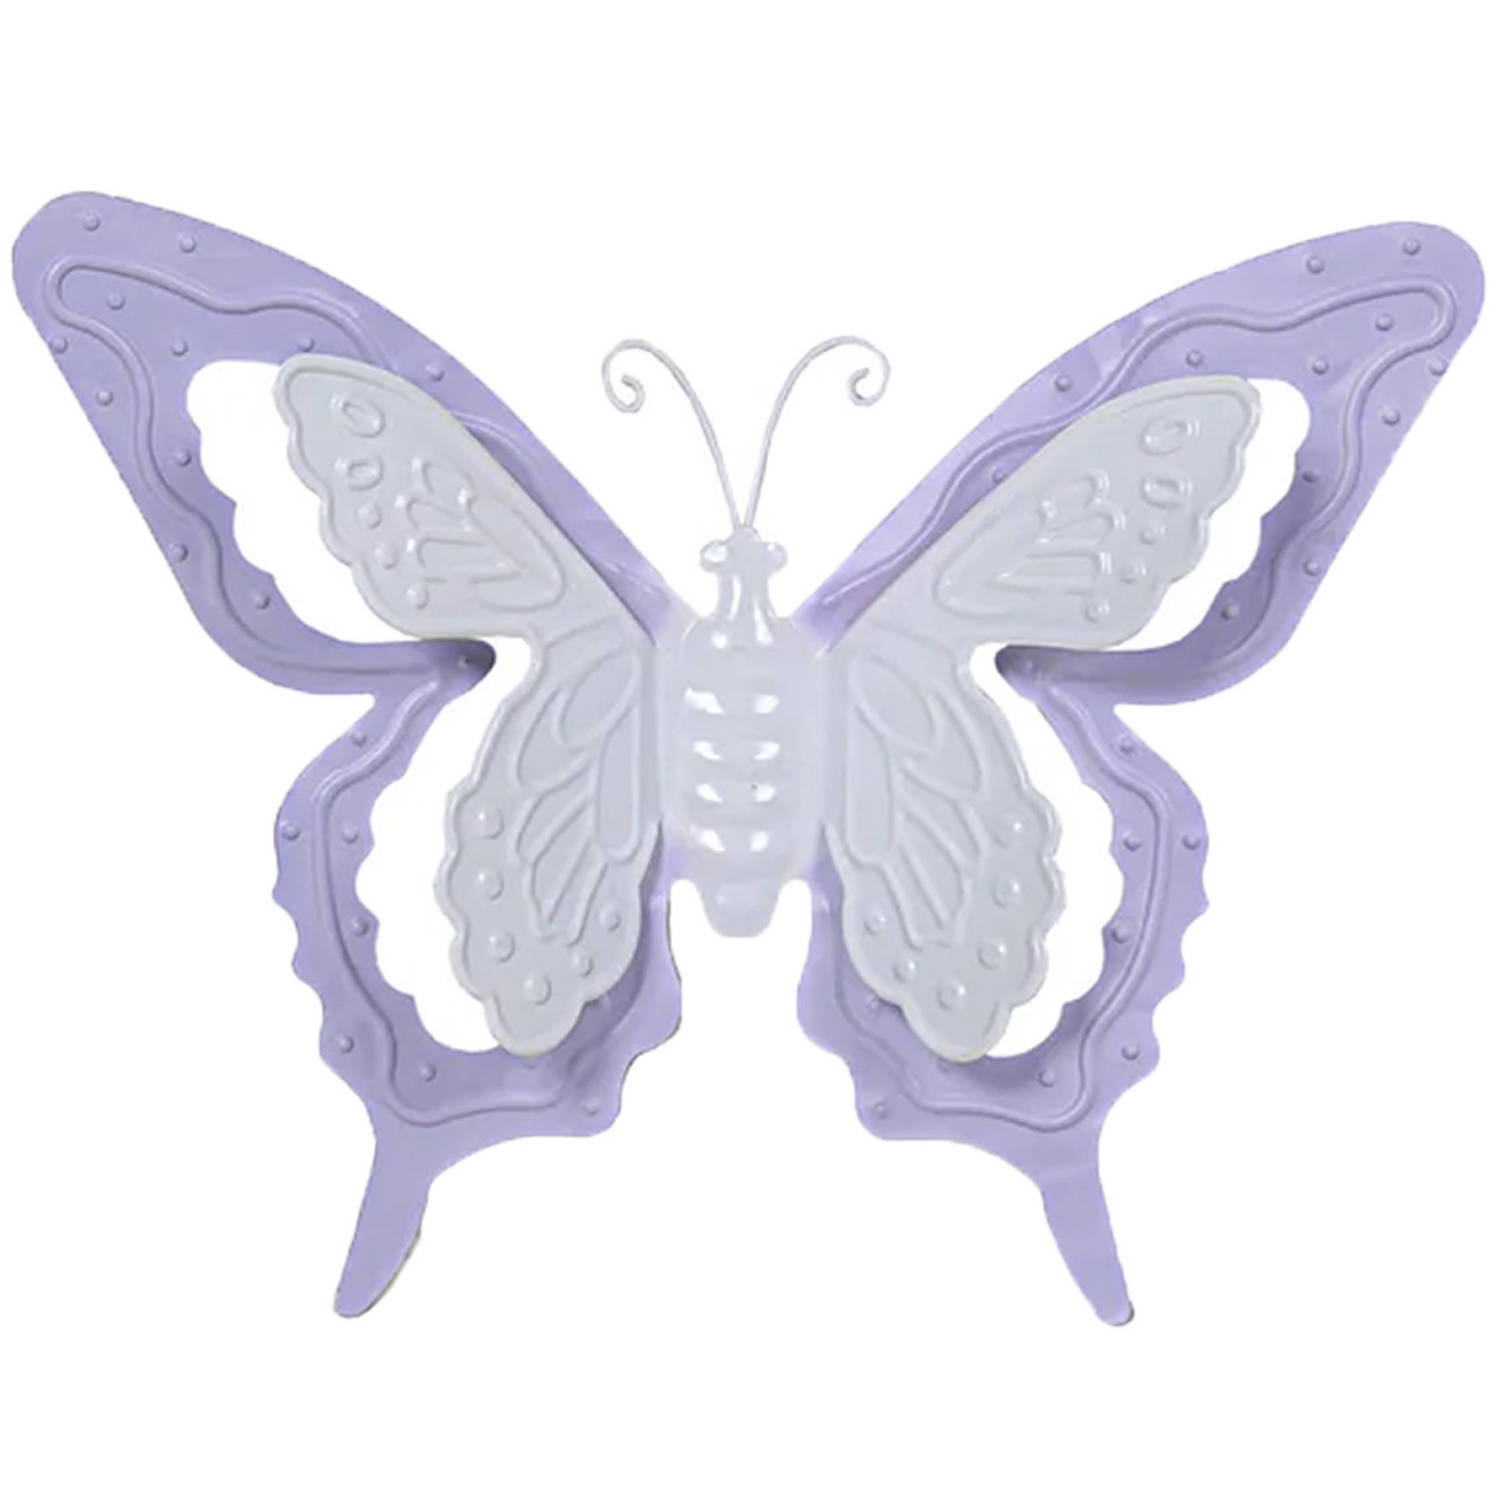 Mega Collections tuin-schutting decoratie vlinder metaal lila paars 17 x 13 cm Tuinbeelden